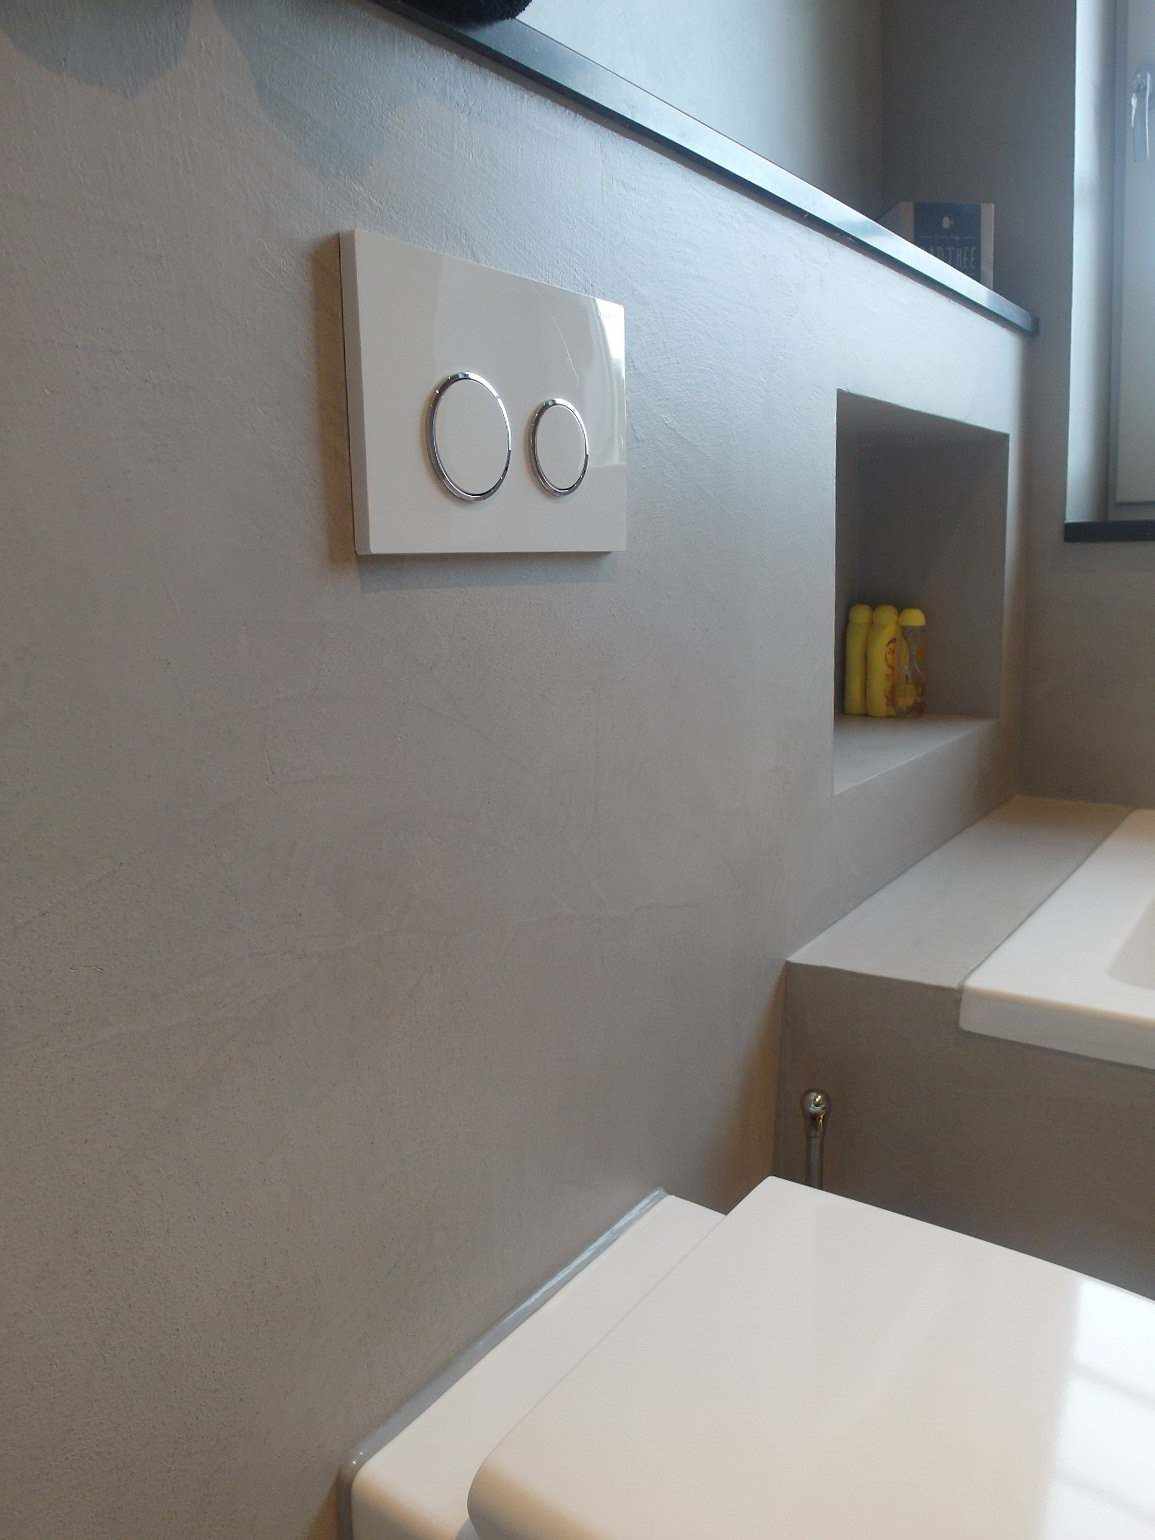 Mikrozement an der Wand und dem Möbel eines Badezimmers in Holland im Projekt Decas.